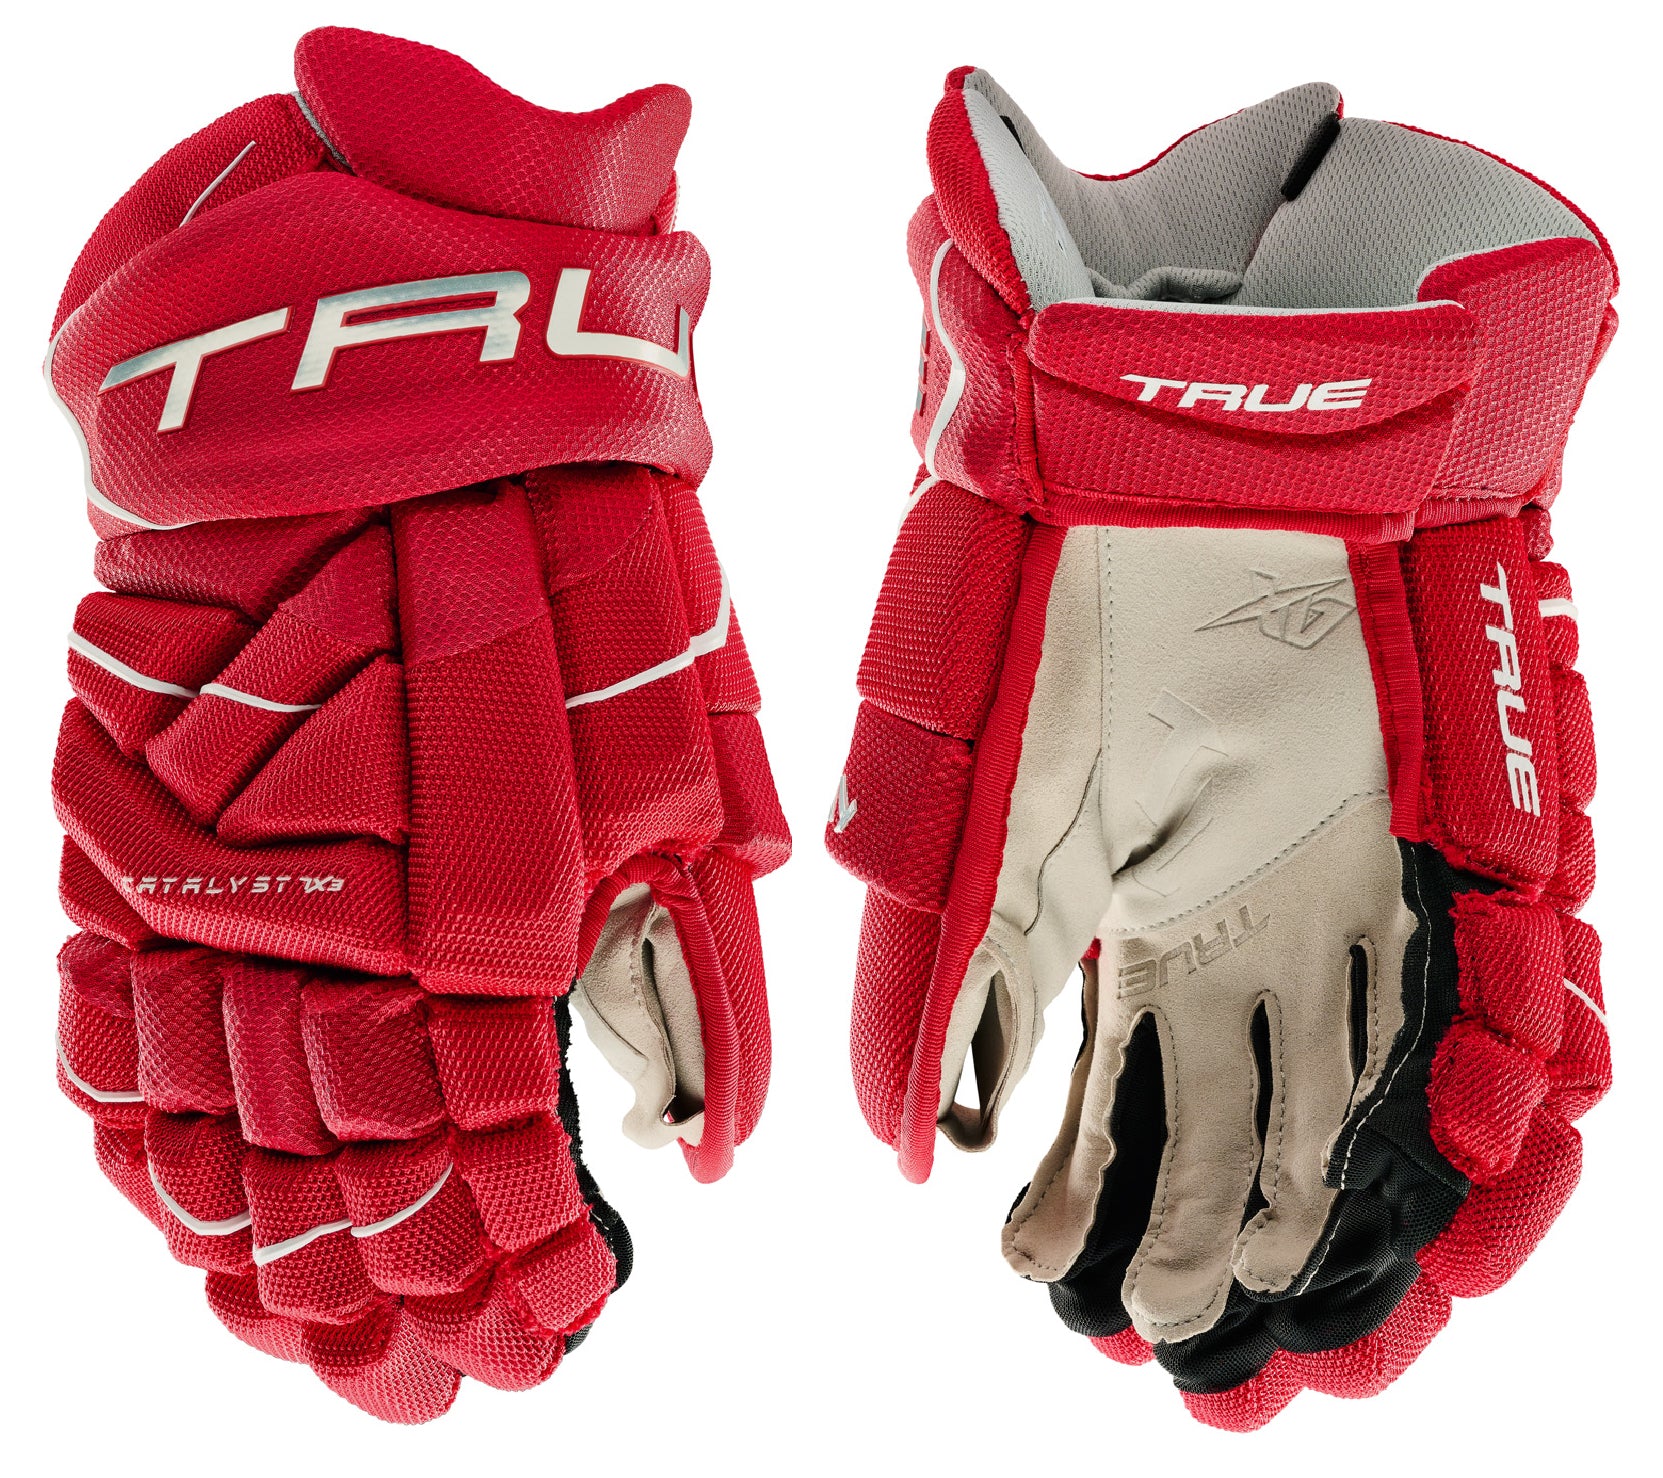 True Catalyst 7X3 Junior Hockey Gloves